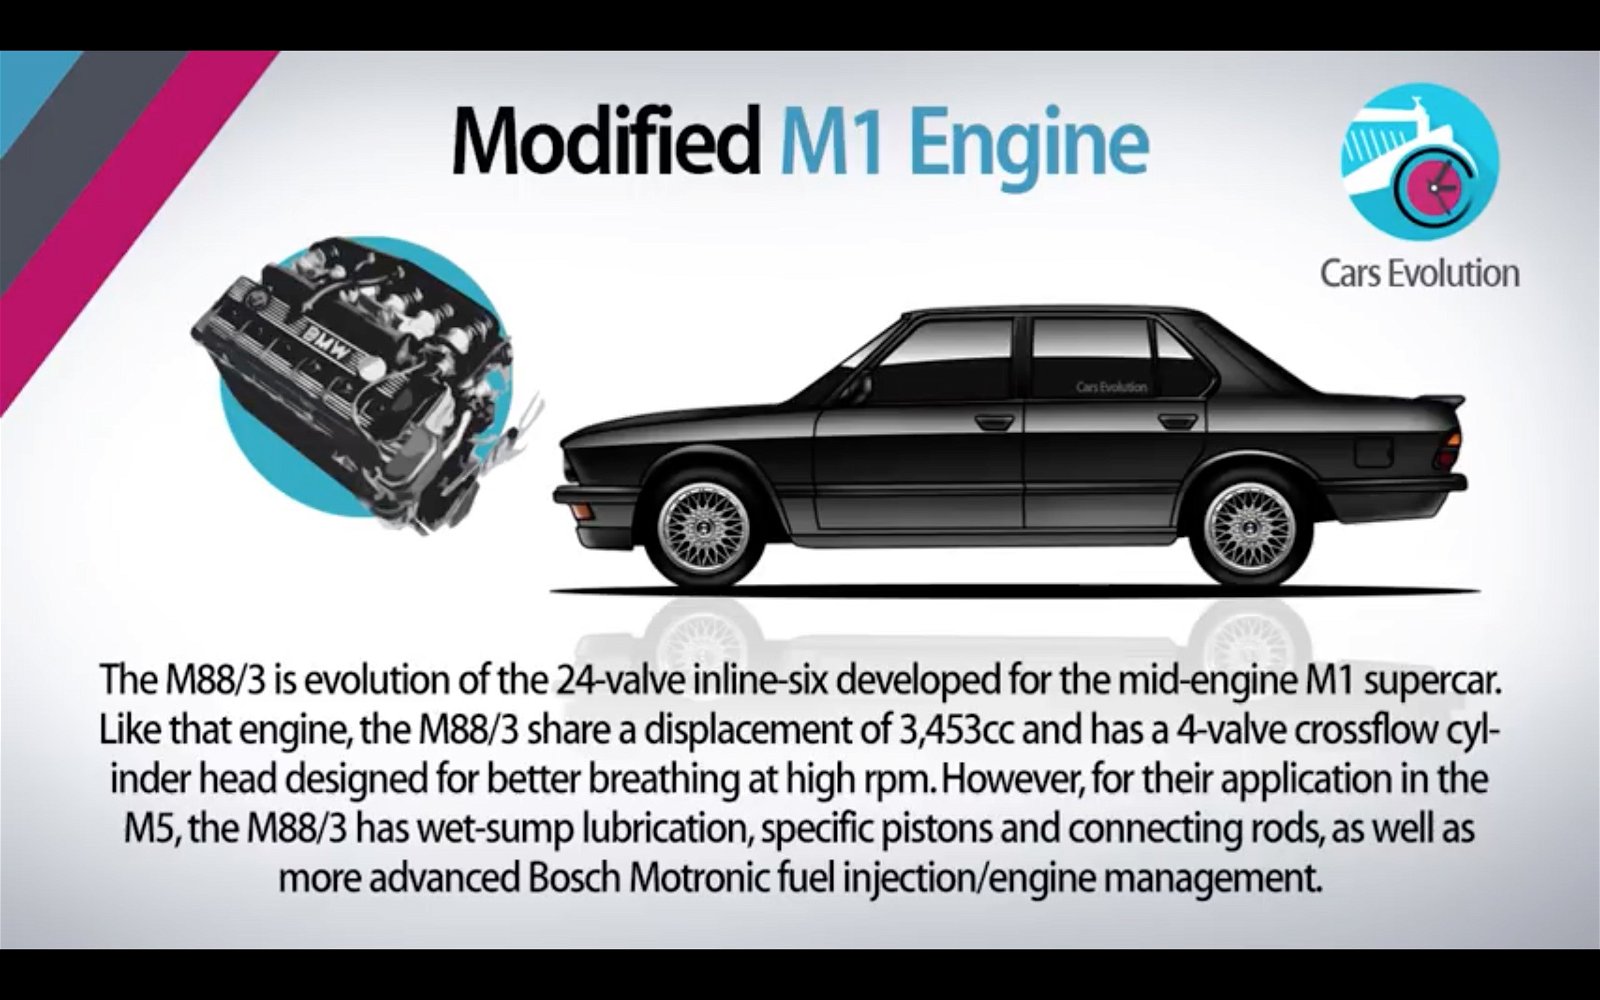 BMW M5 with M1 engine